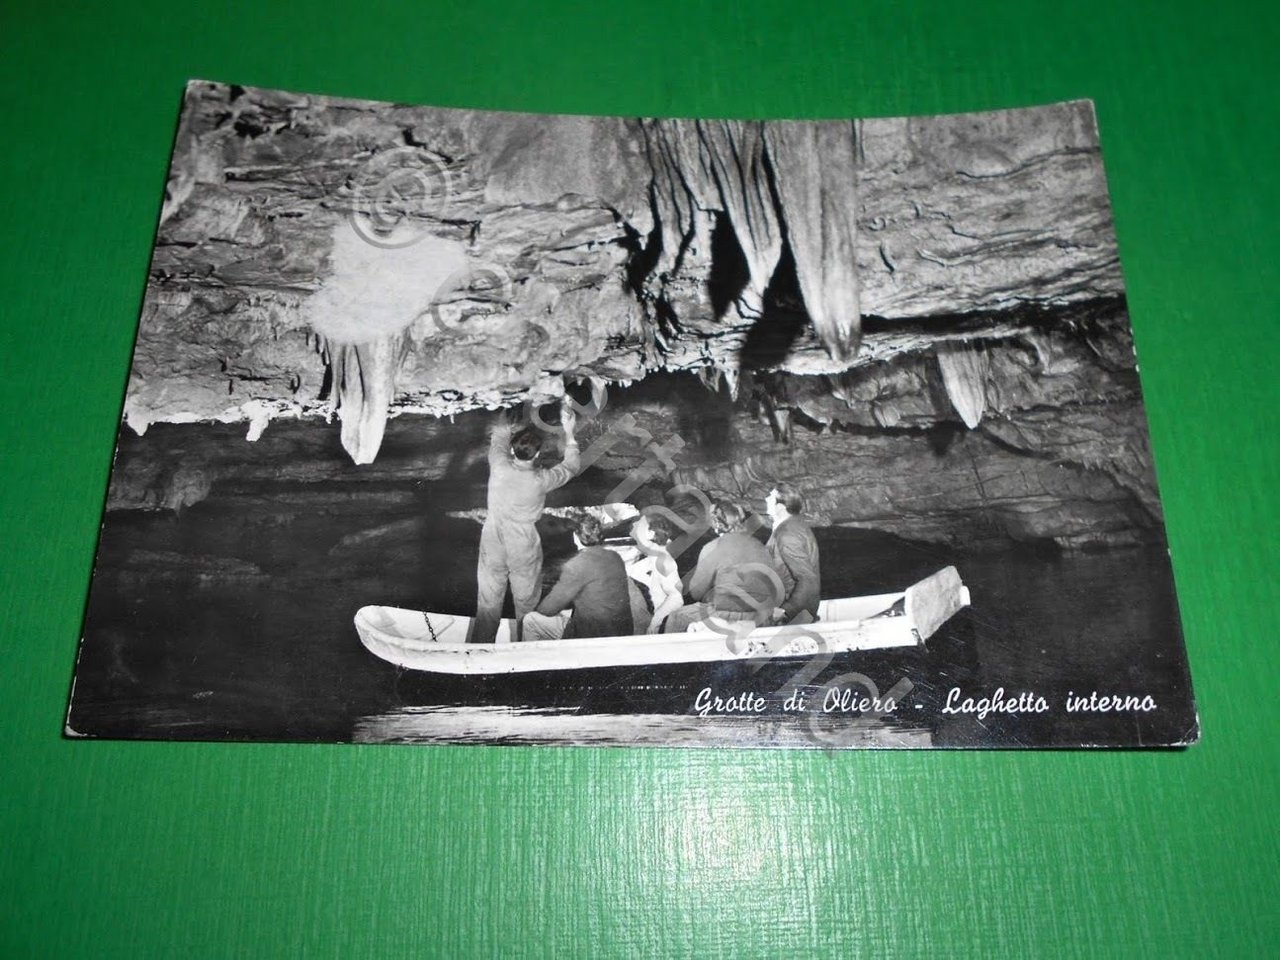 Cartolina Grotte di Oliero - Laghetto interno 1954.